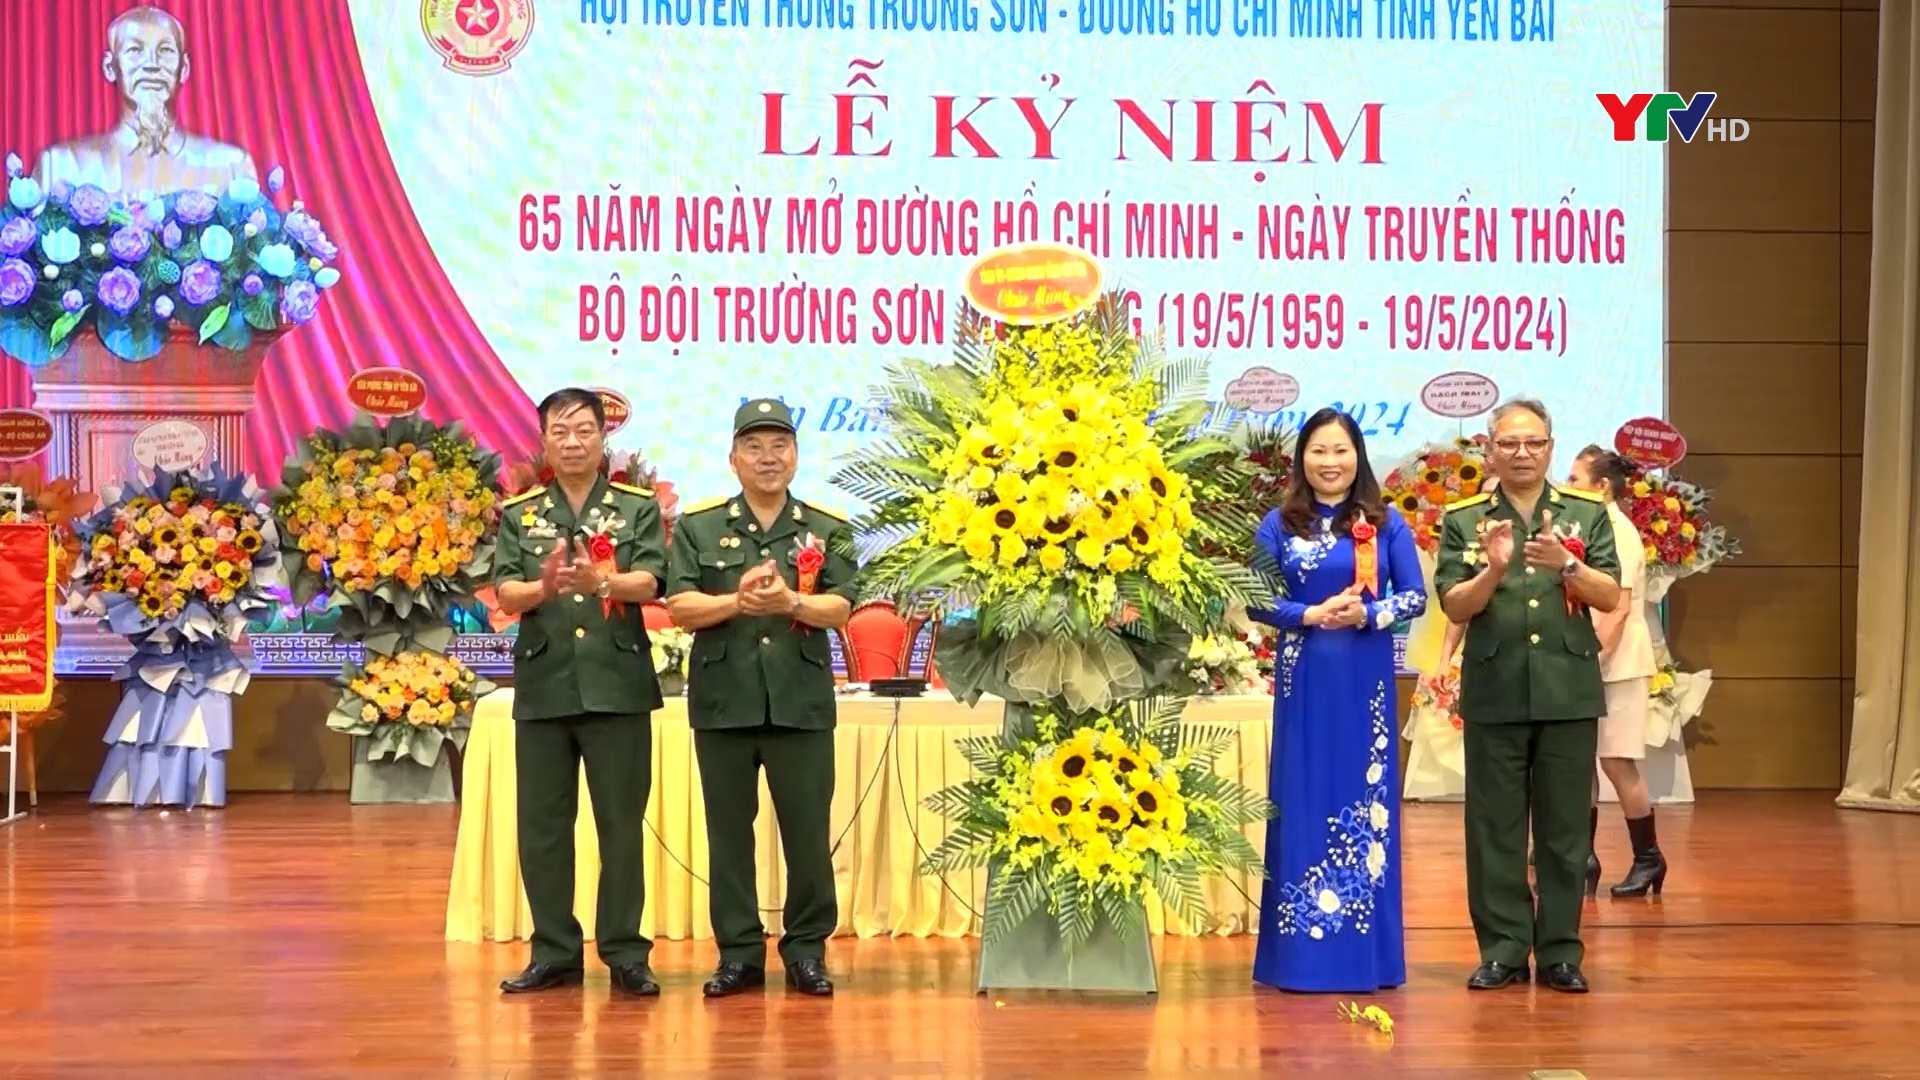 Yên Bái kỷ niệm 65 năm Ngày mở đường Hồ Chí Minh, Ngày truyền thống Bộ đội Trường Sơn anh hùng